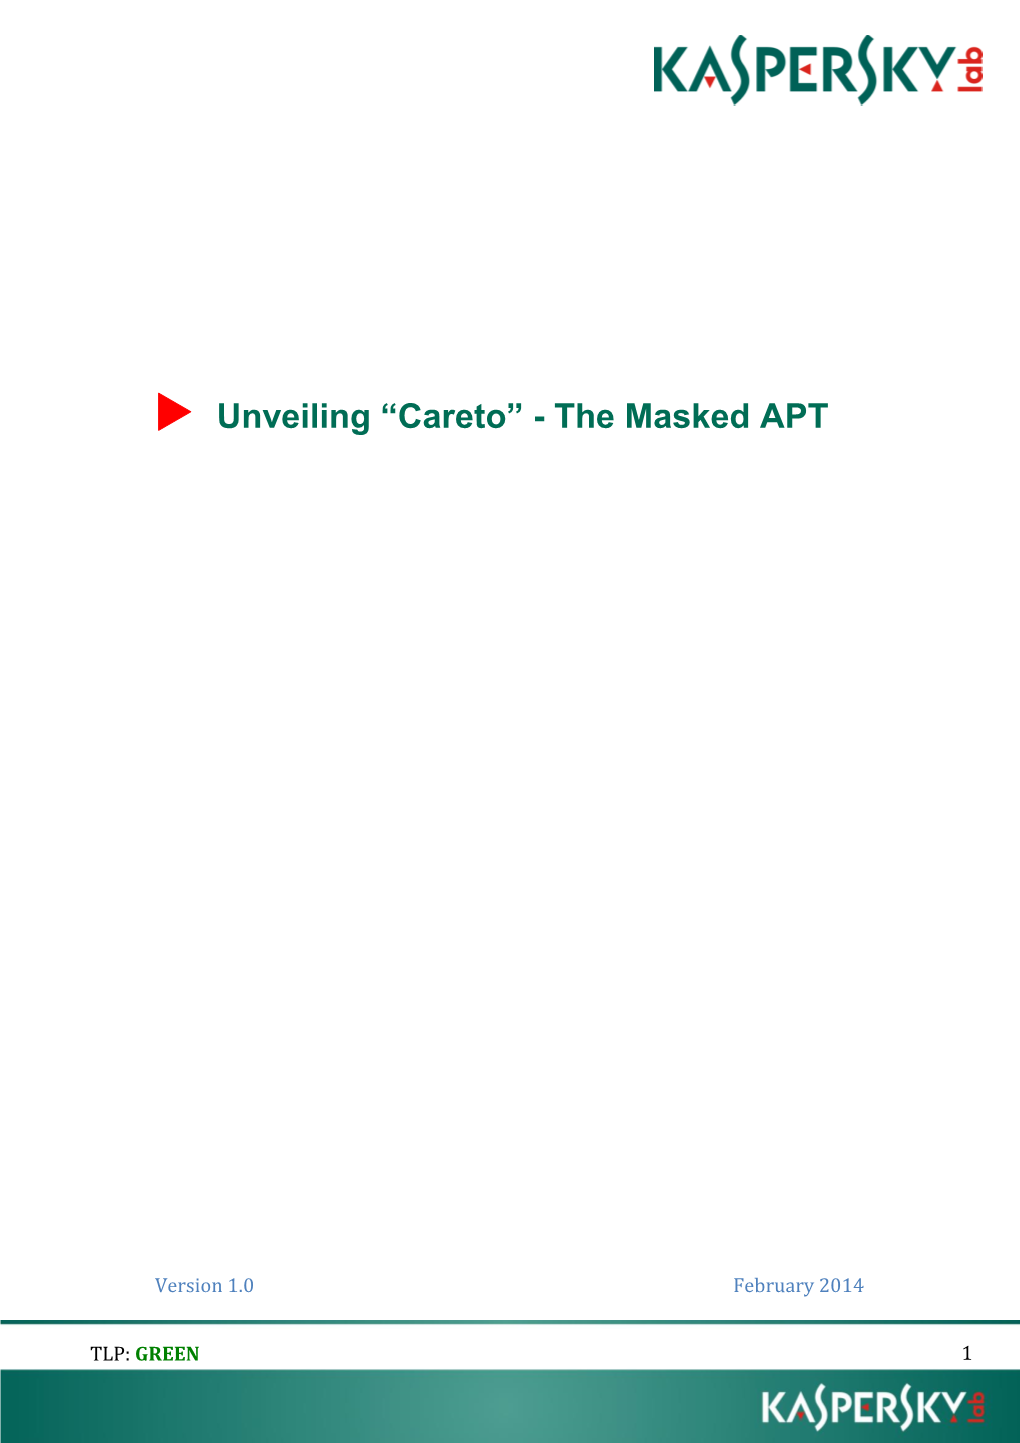 Unveiling “Careto” - the Masked APT